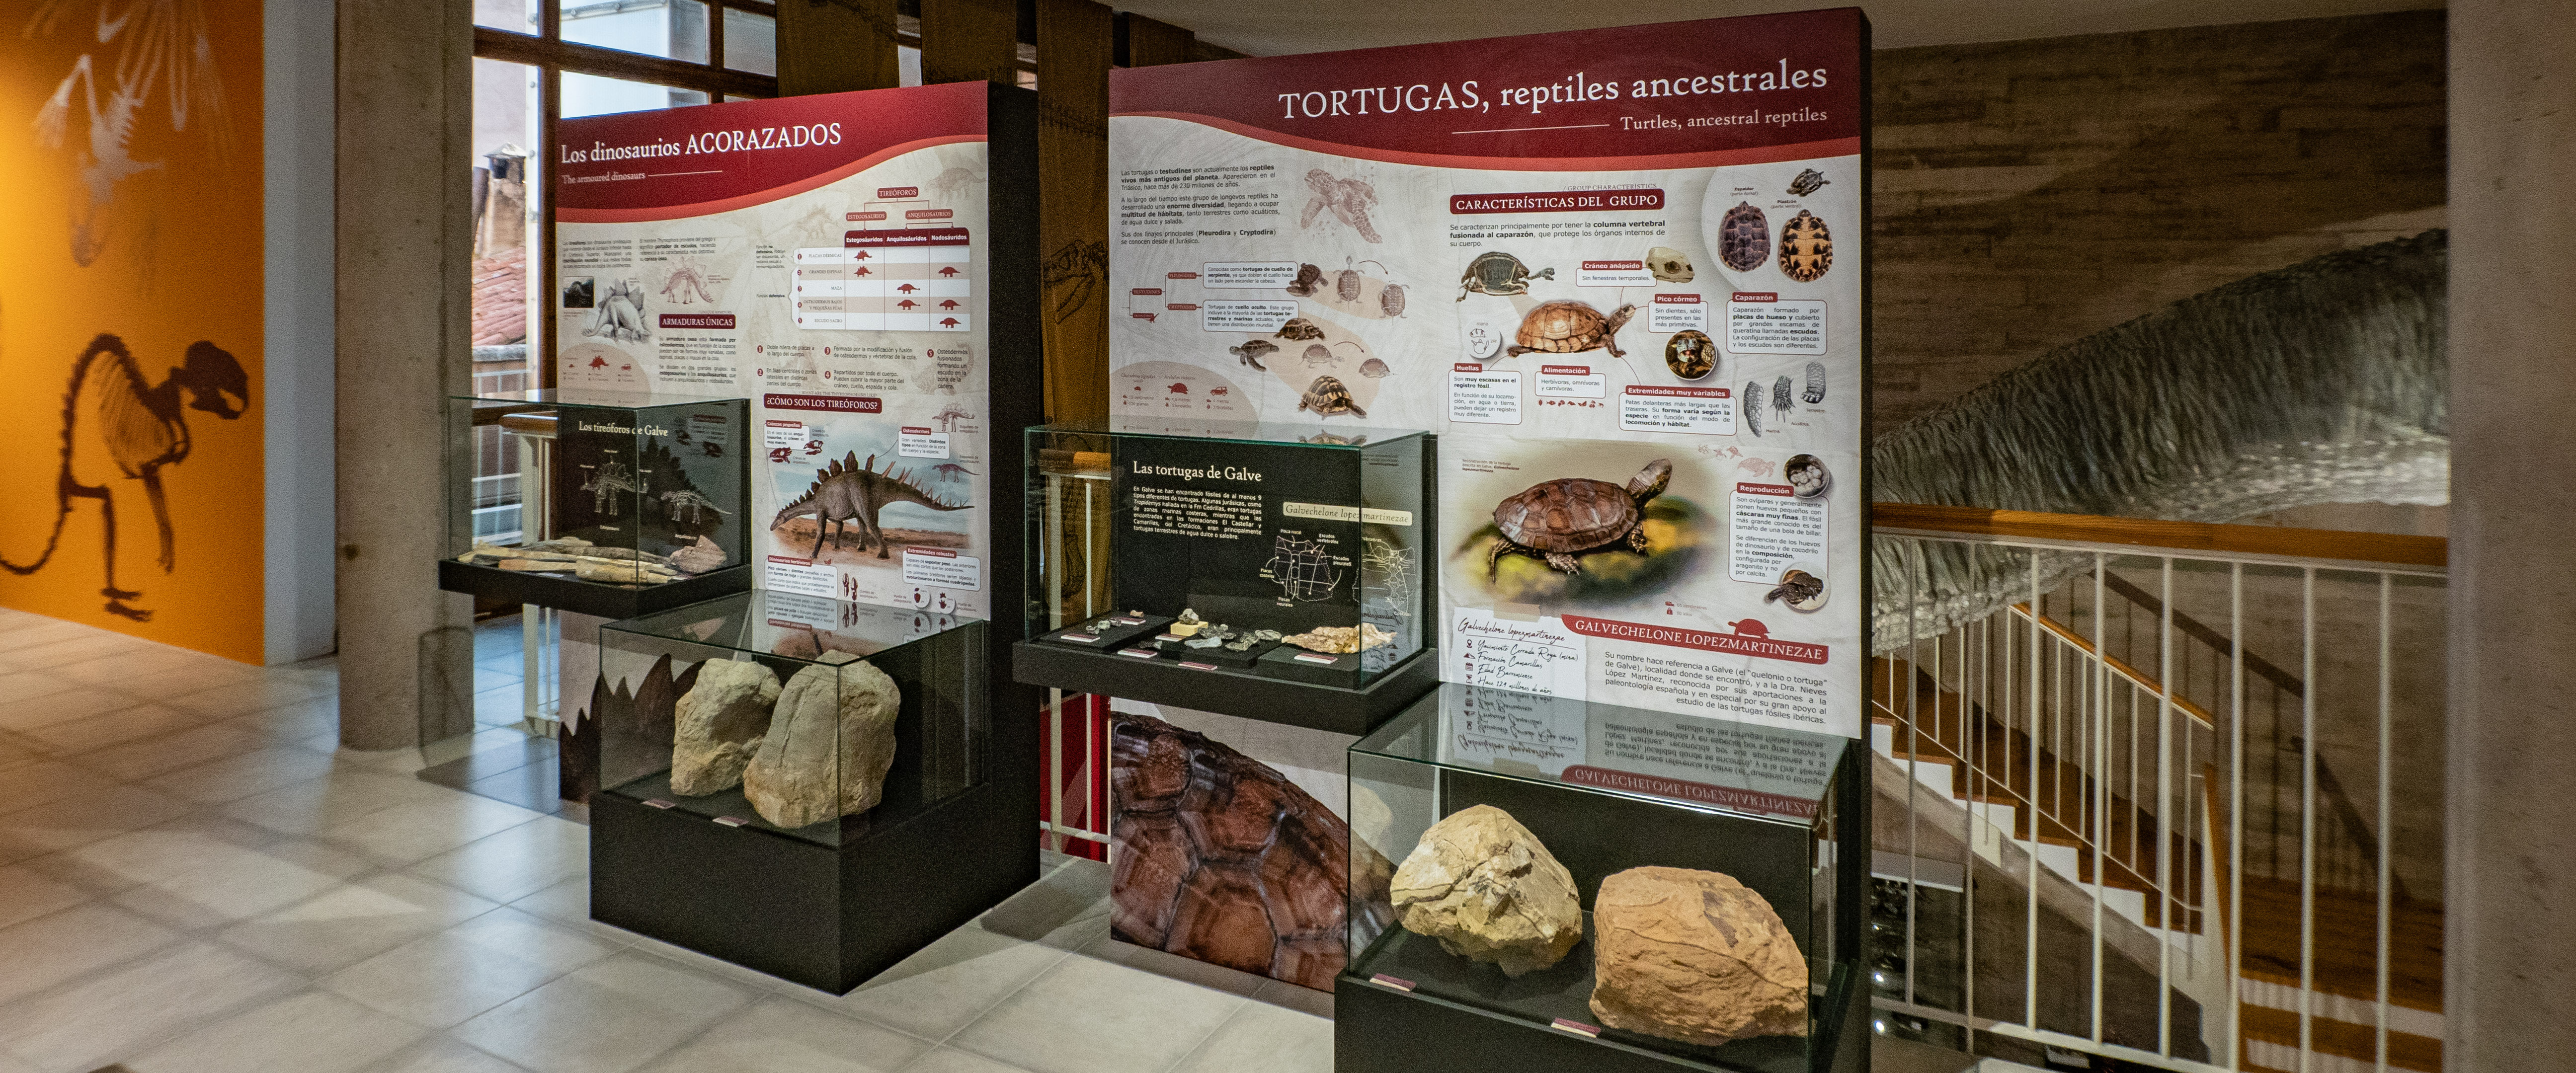 Panelería interpretativa sobre fósiles de dinosaurios tireóforos y tortugas en el Museo Paleontológico de Galve (Teruel).